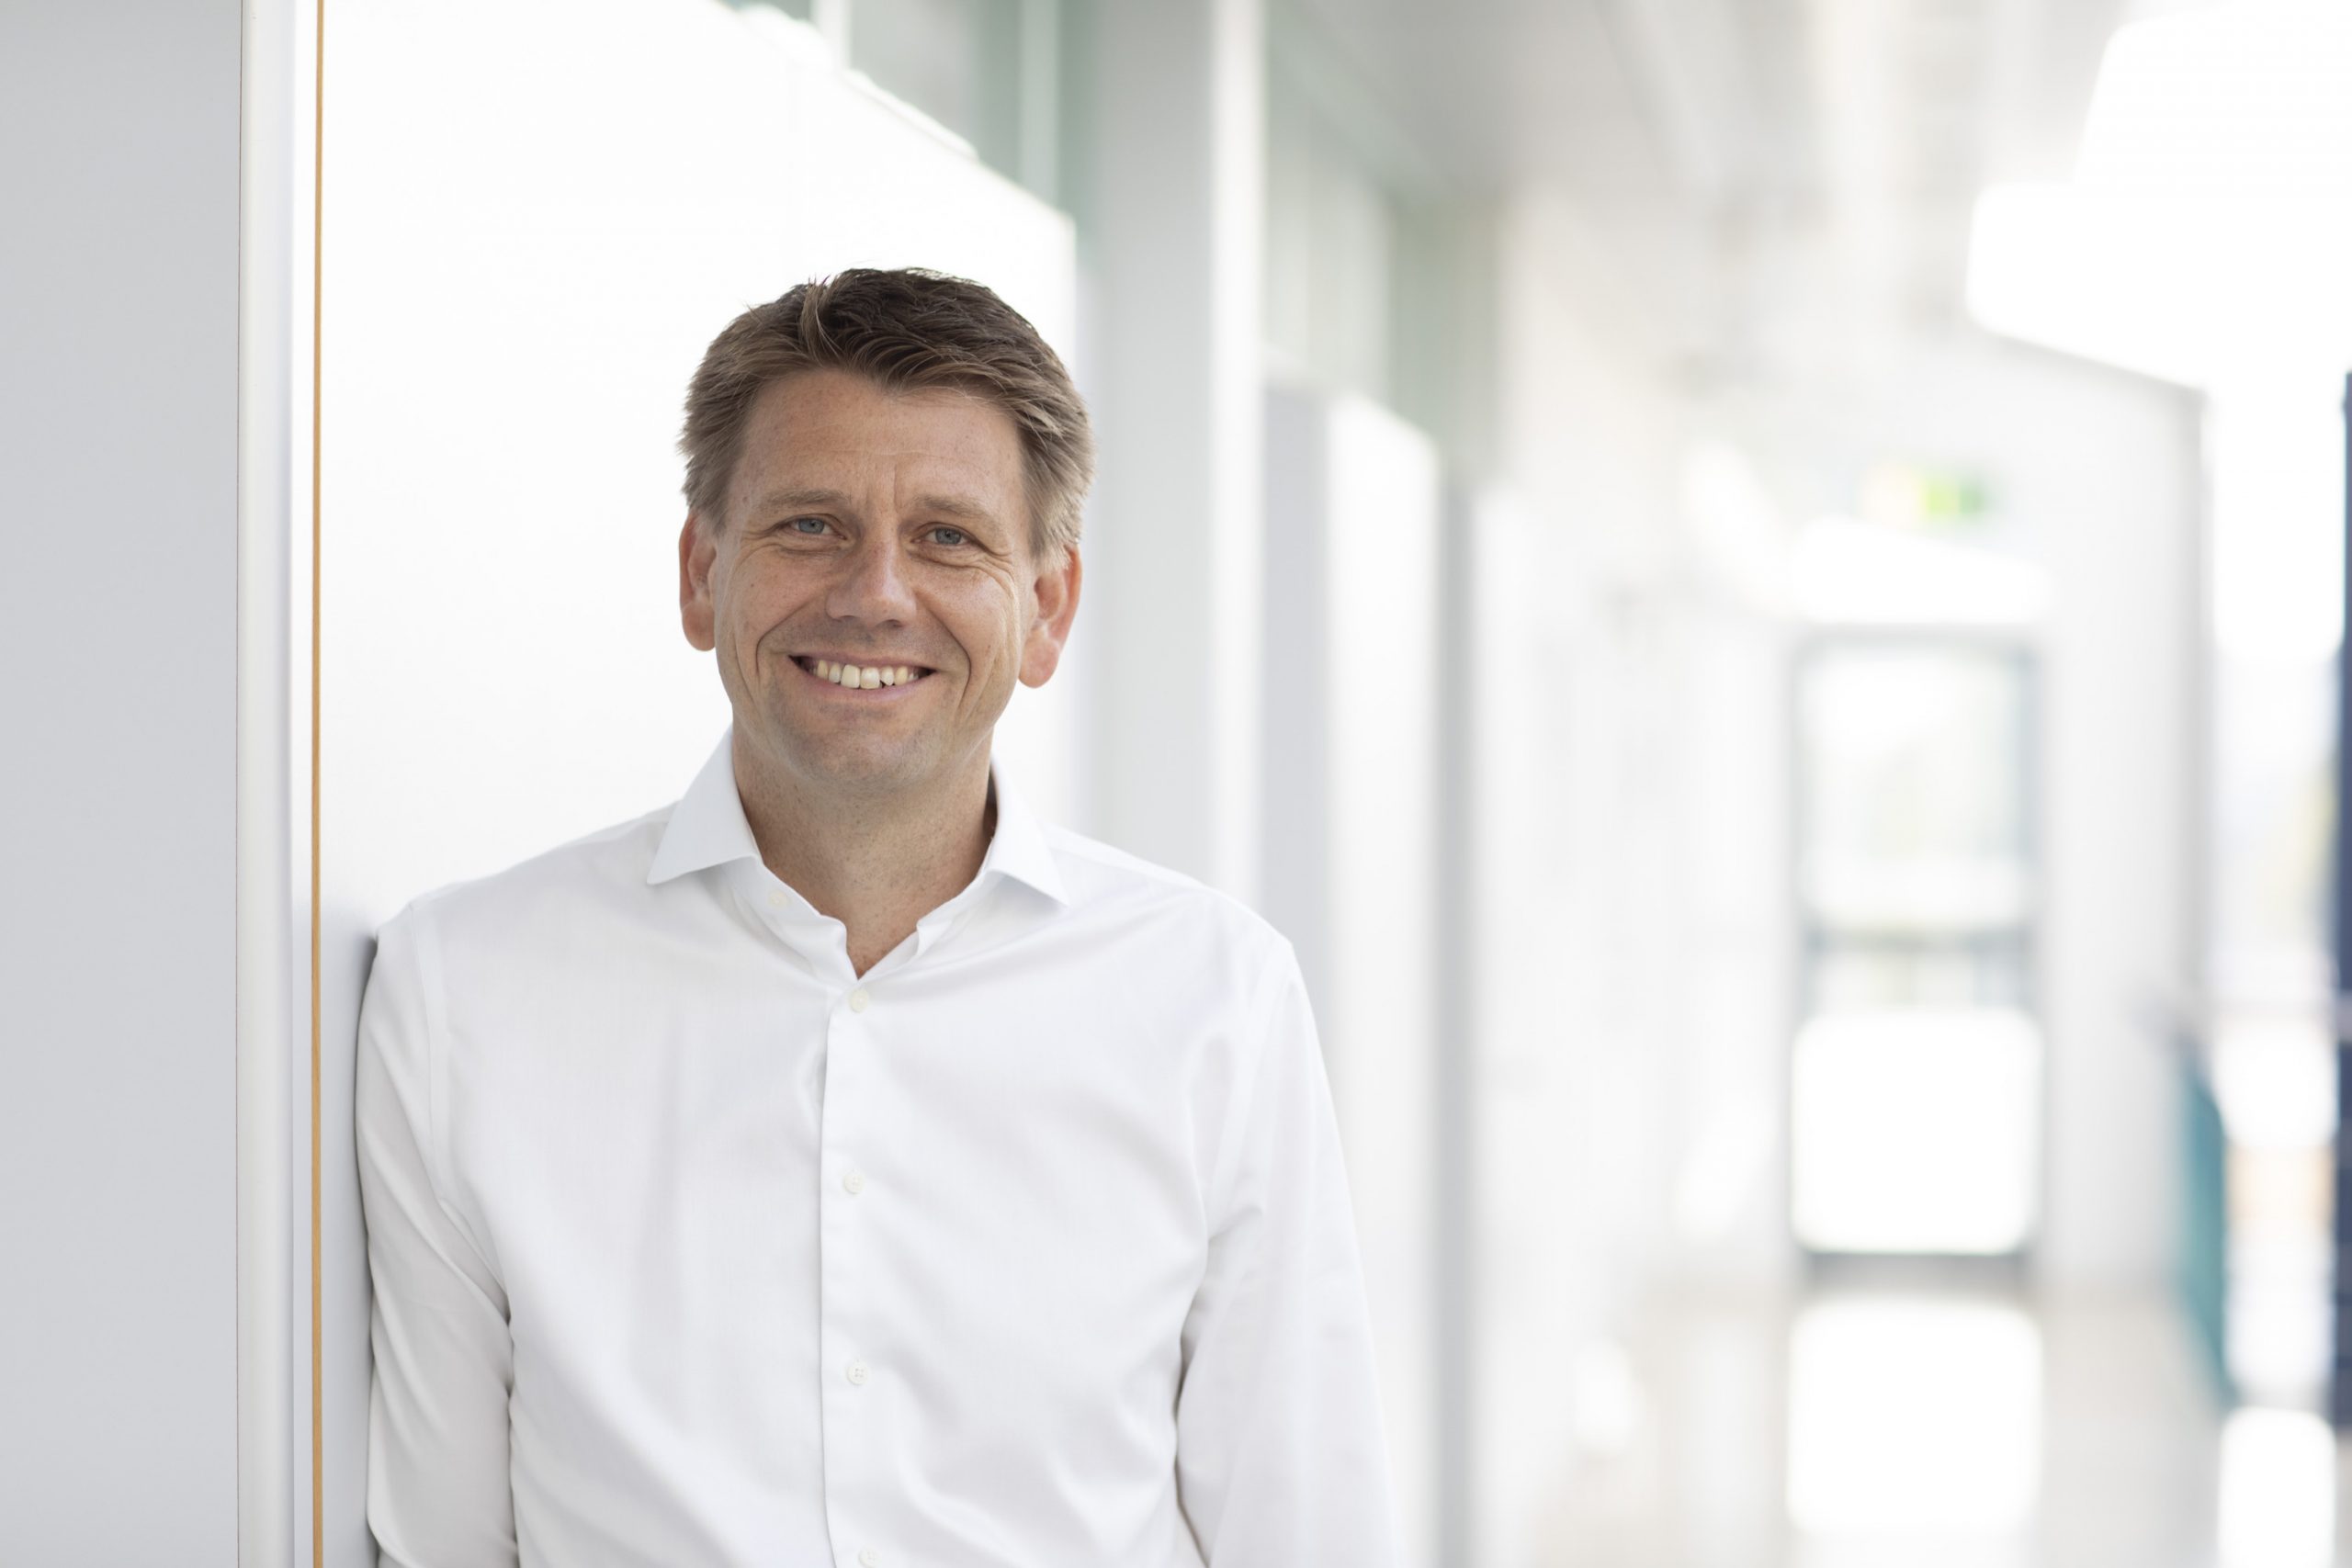 Mehr als jeder Dax-Vorstand: Der Chef des schwäbischen Unternehmens Teamviewer verdiente 2020 190.000 Euro am Tag